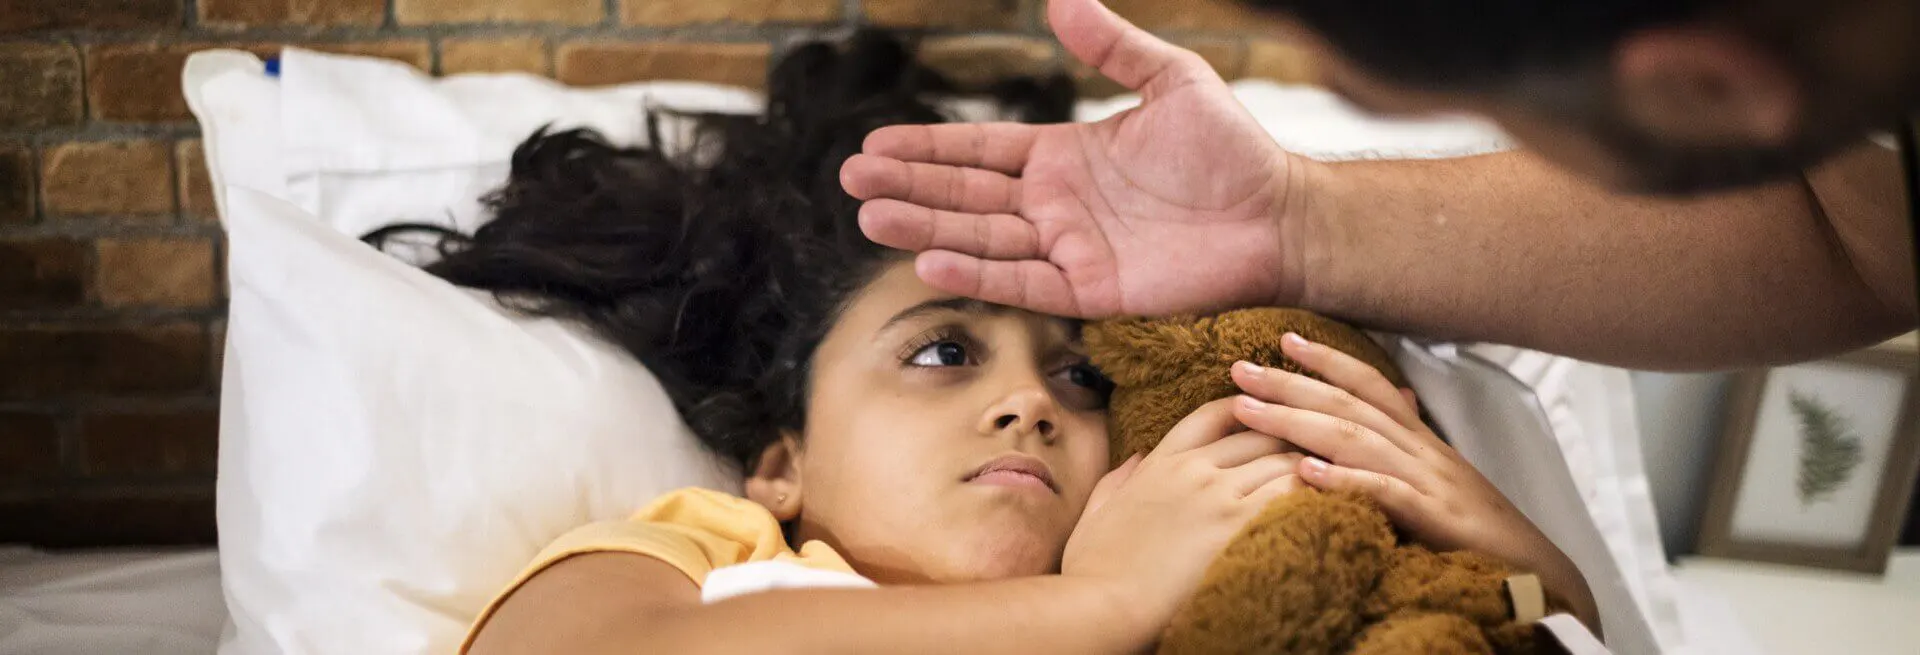 Criança deitada abraçada com um ursinho enquanto adulto verifica se está com febre com a mão sobre a testa da criança